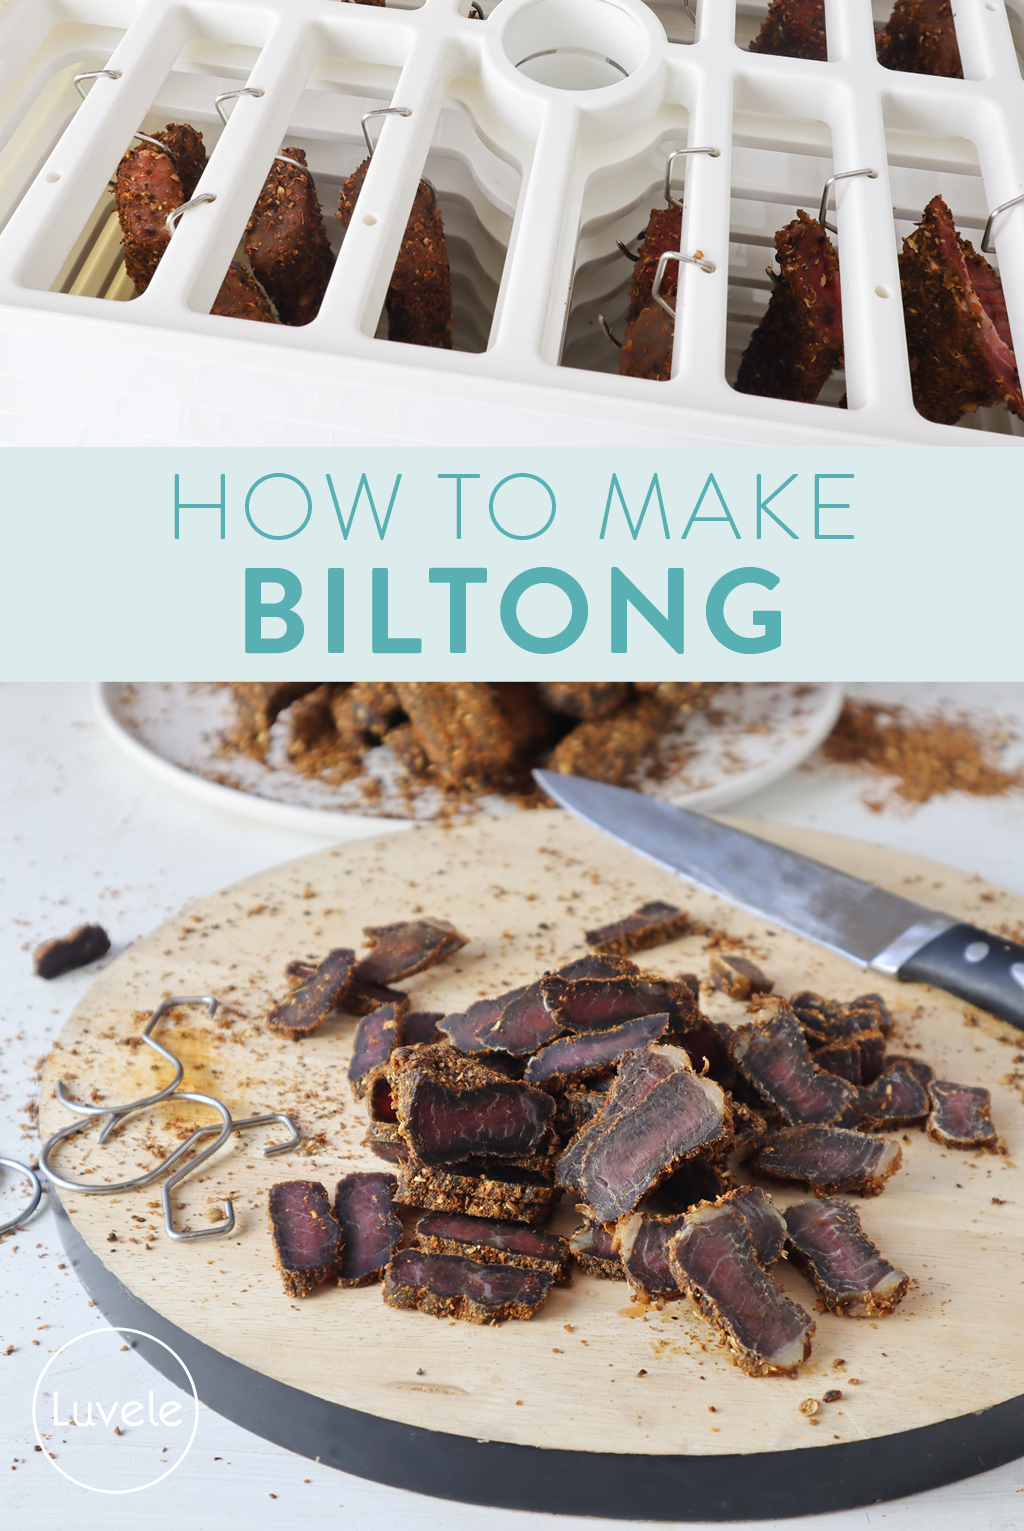 How to make biltong